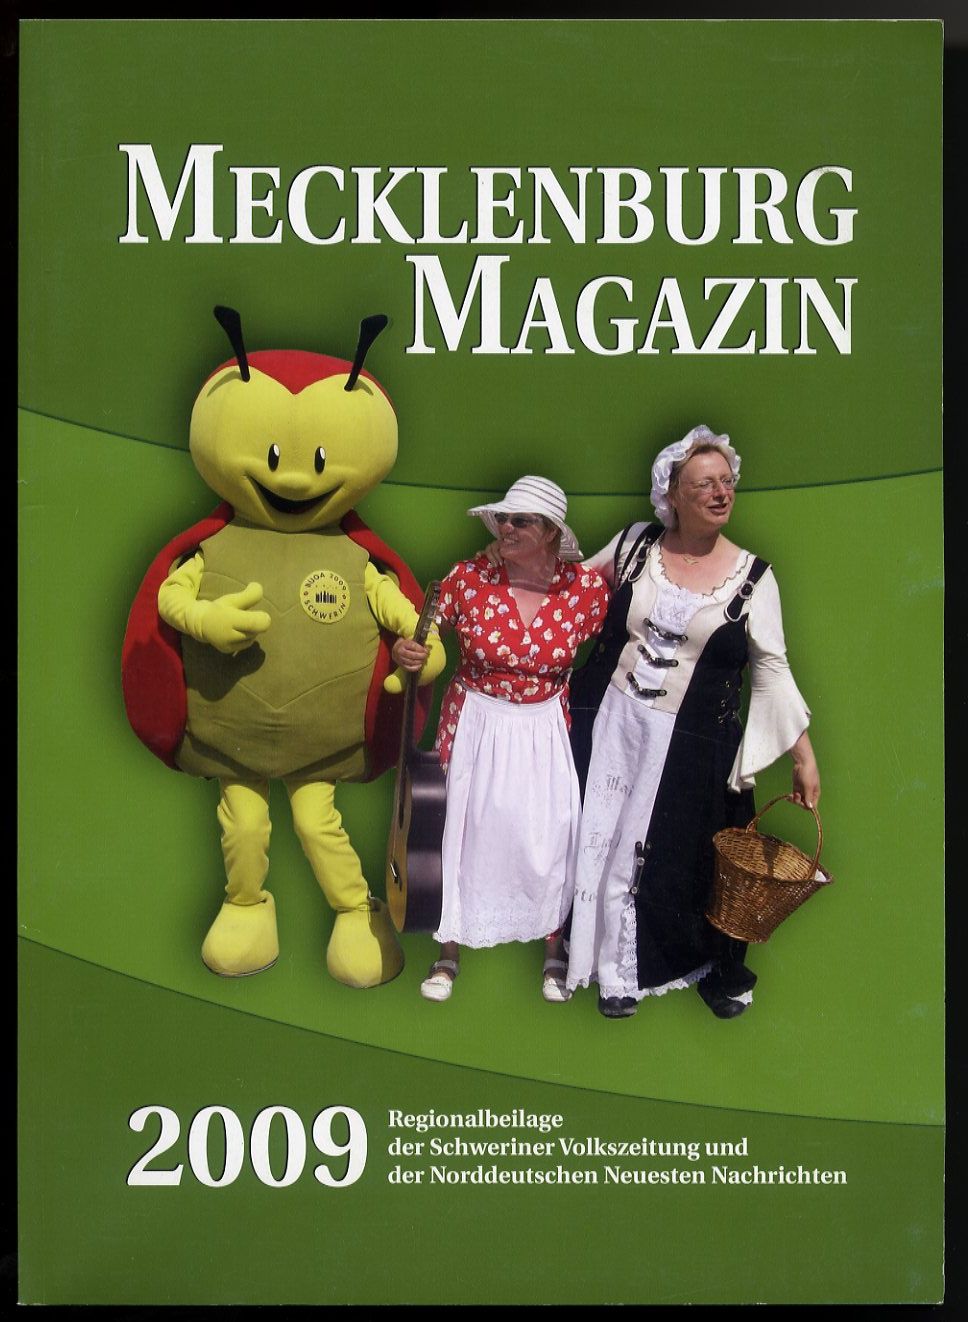   Mecklenburg-Magazin. Beilage der Schweriner Volkszeitung und der Norddeutschen Neuesten Nachrichten. Band 20. 